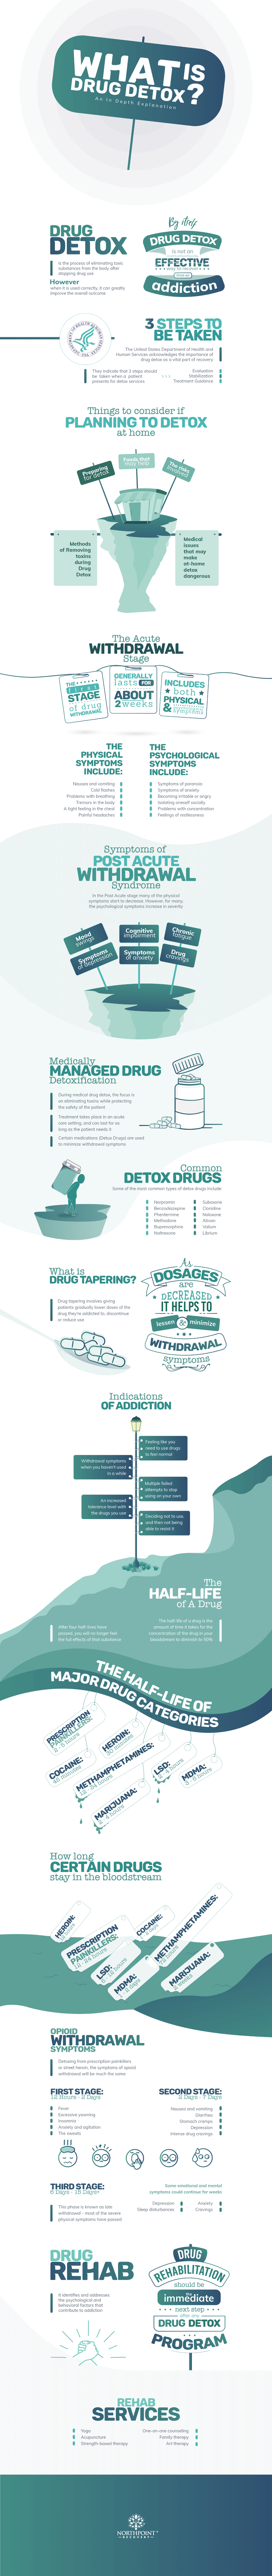 Drug Detox Full Infographic